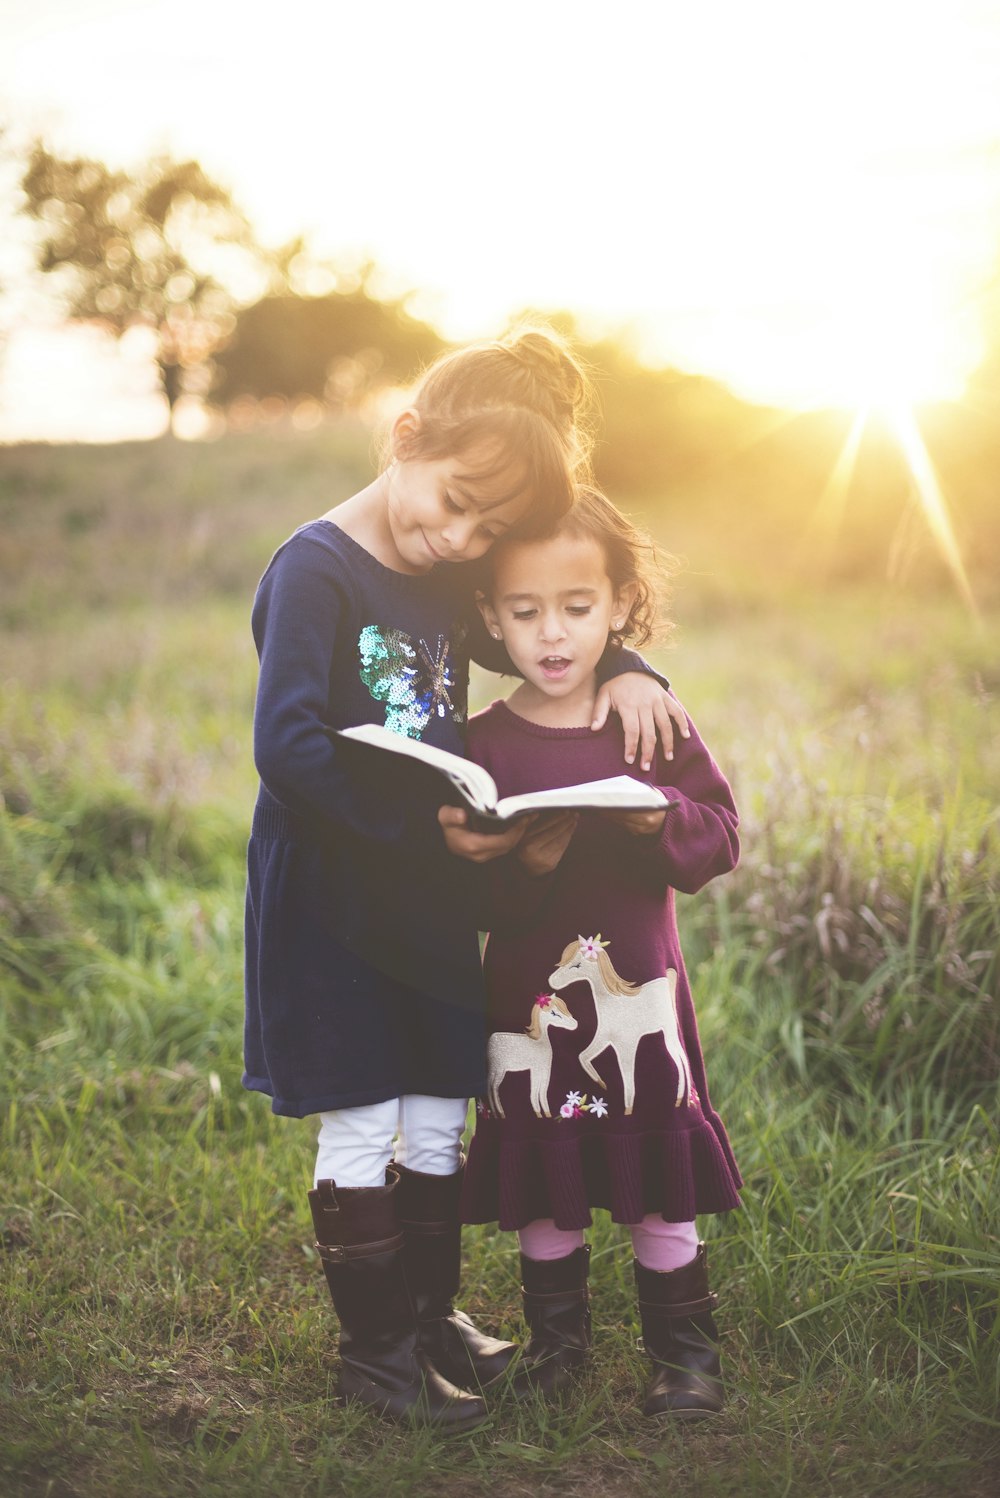 La mano sinistra della ragazza avvolge il bambino mentre legge il libro durante l'ora d'oro